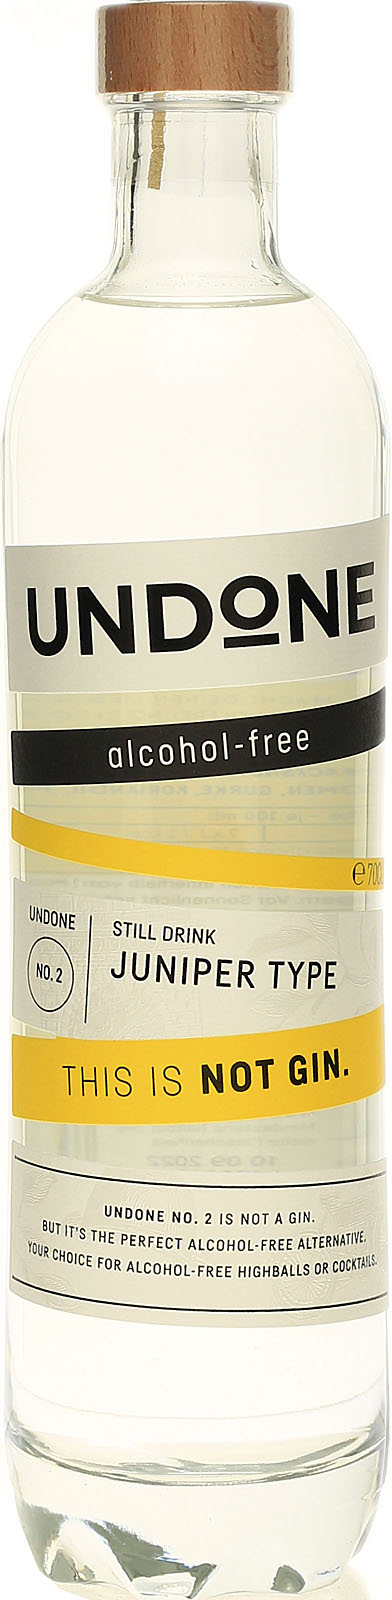 - - No. Undone Gin Not kaufen hier 2 Type Juniper